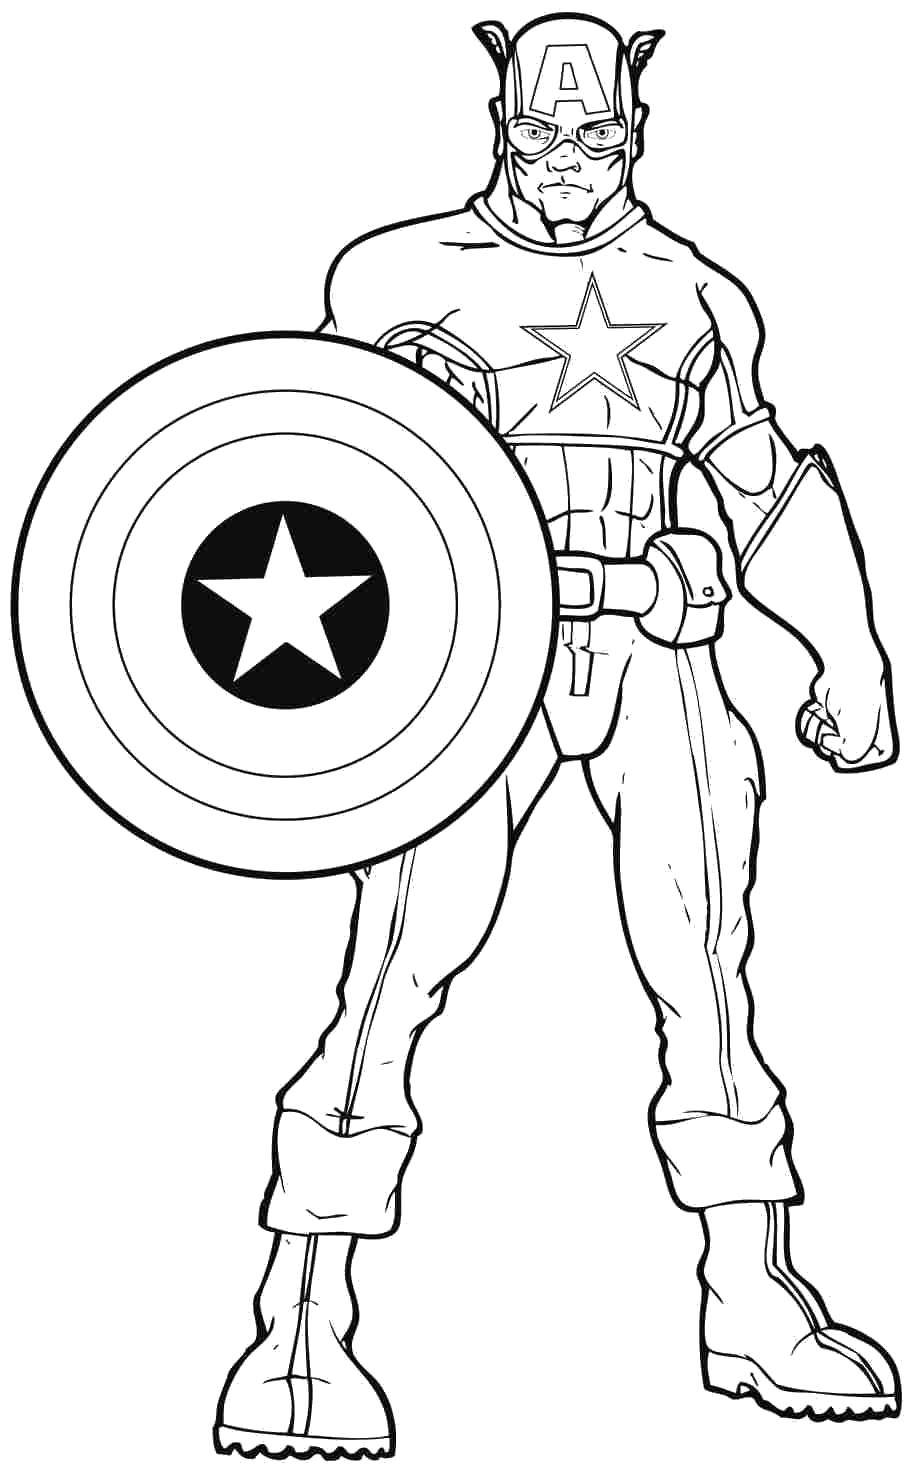 Название: Раскраска Капитан америка. Категория: Комиксы. Теги: Комиксы, Капитан Америка.